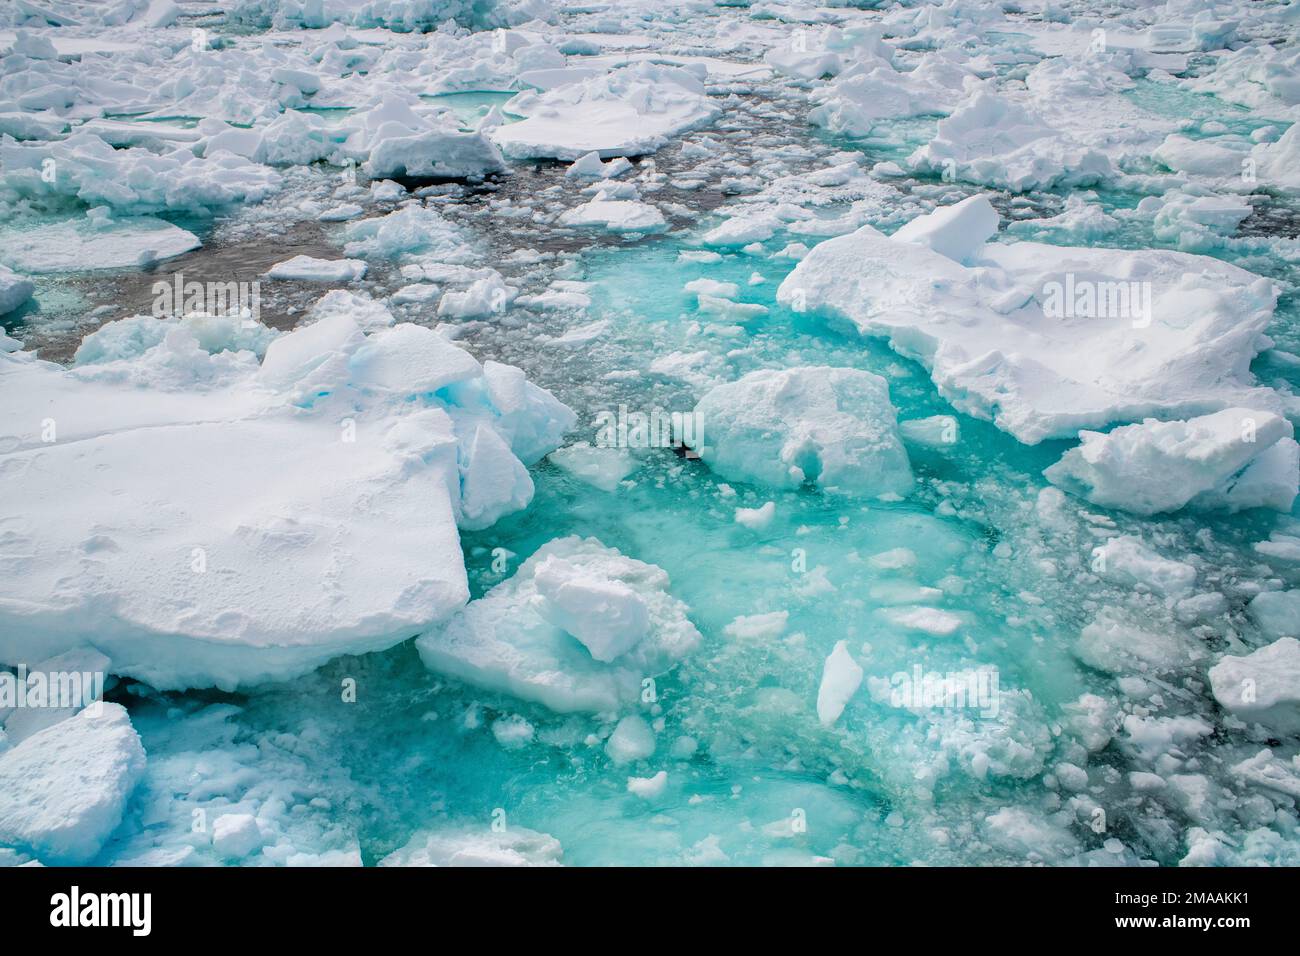 De beaux iceberers à Storoya, Svalbard. Expédition navire de croisière Greg Mortimer dans l'archipel de Svalbard, dans l'Arctique de la Norvège. Storøya est une île dans le S Banque D'Images